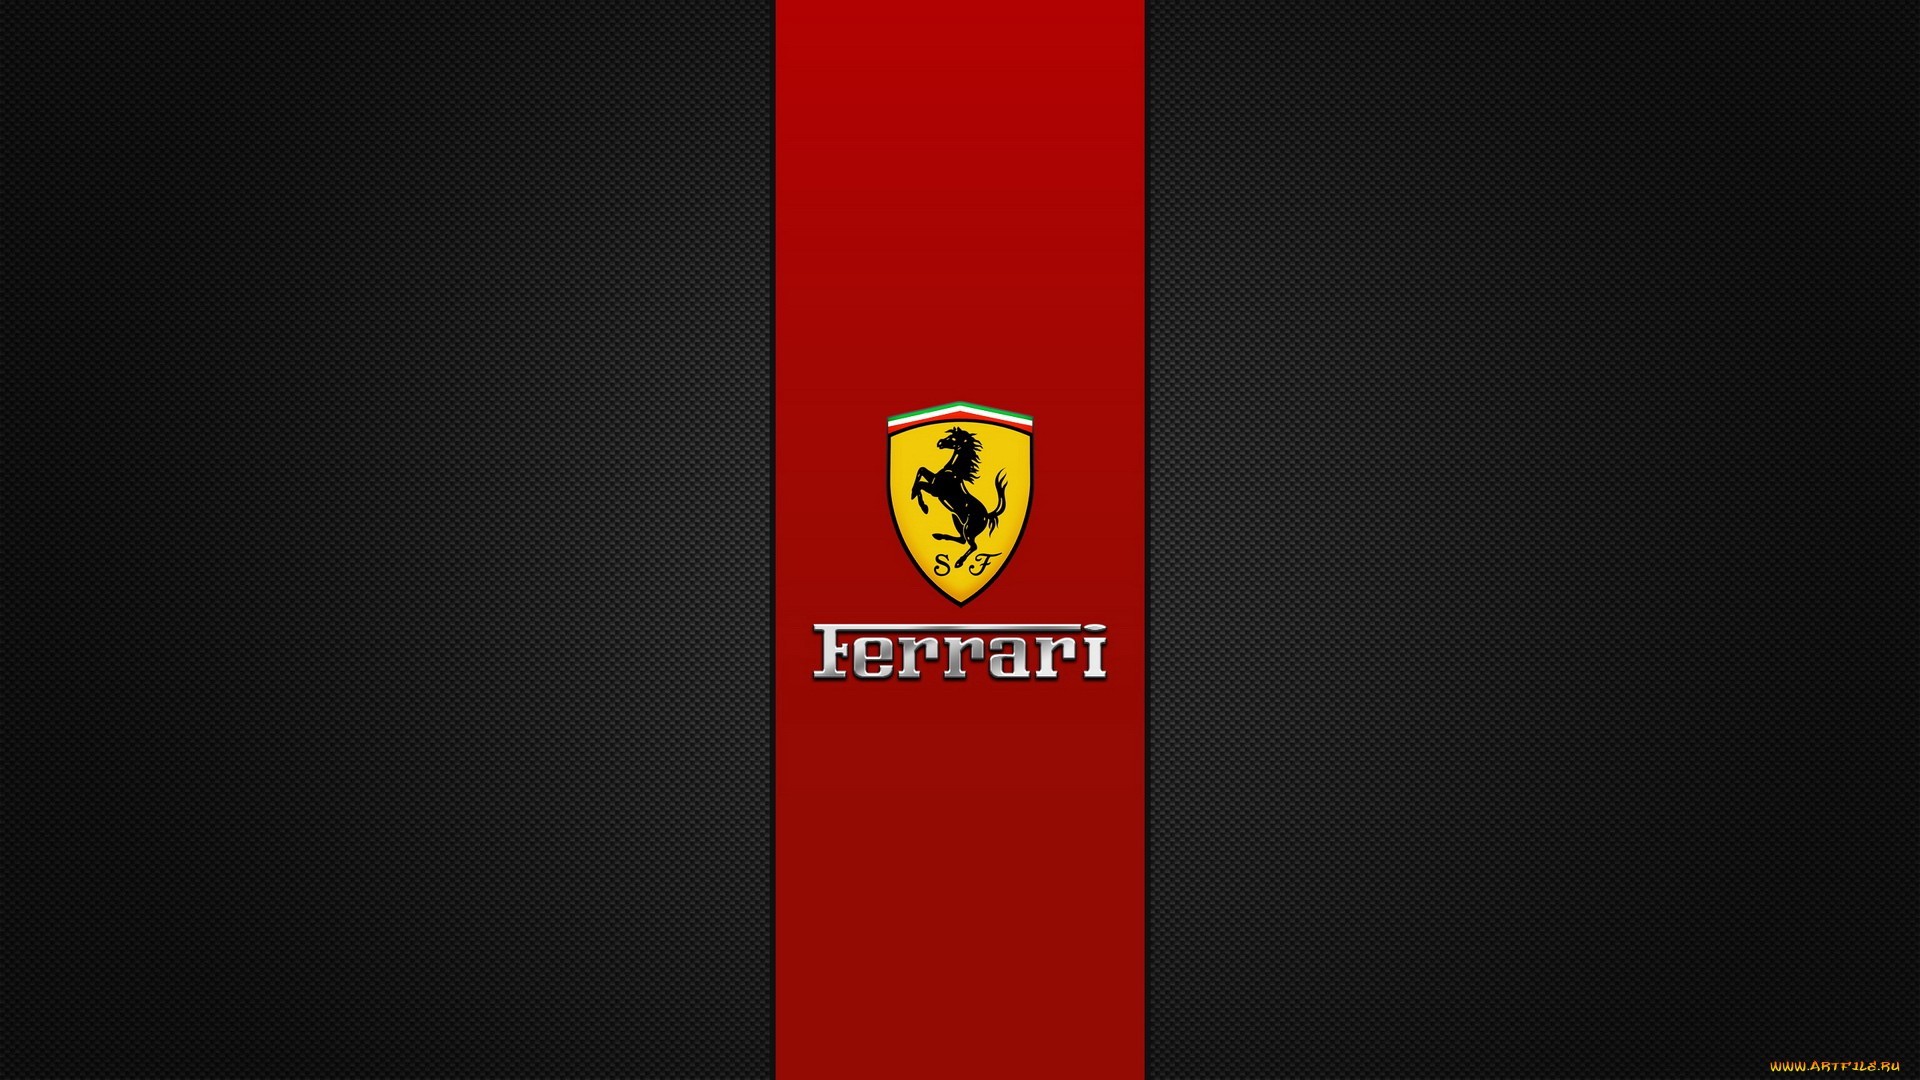 Ferrari 1920 x 1080 HD Wallpaper